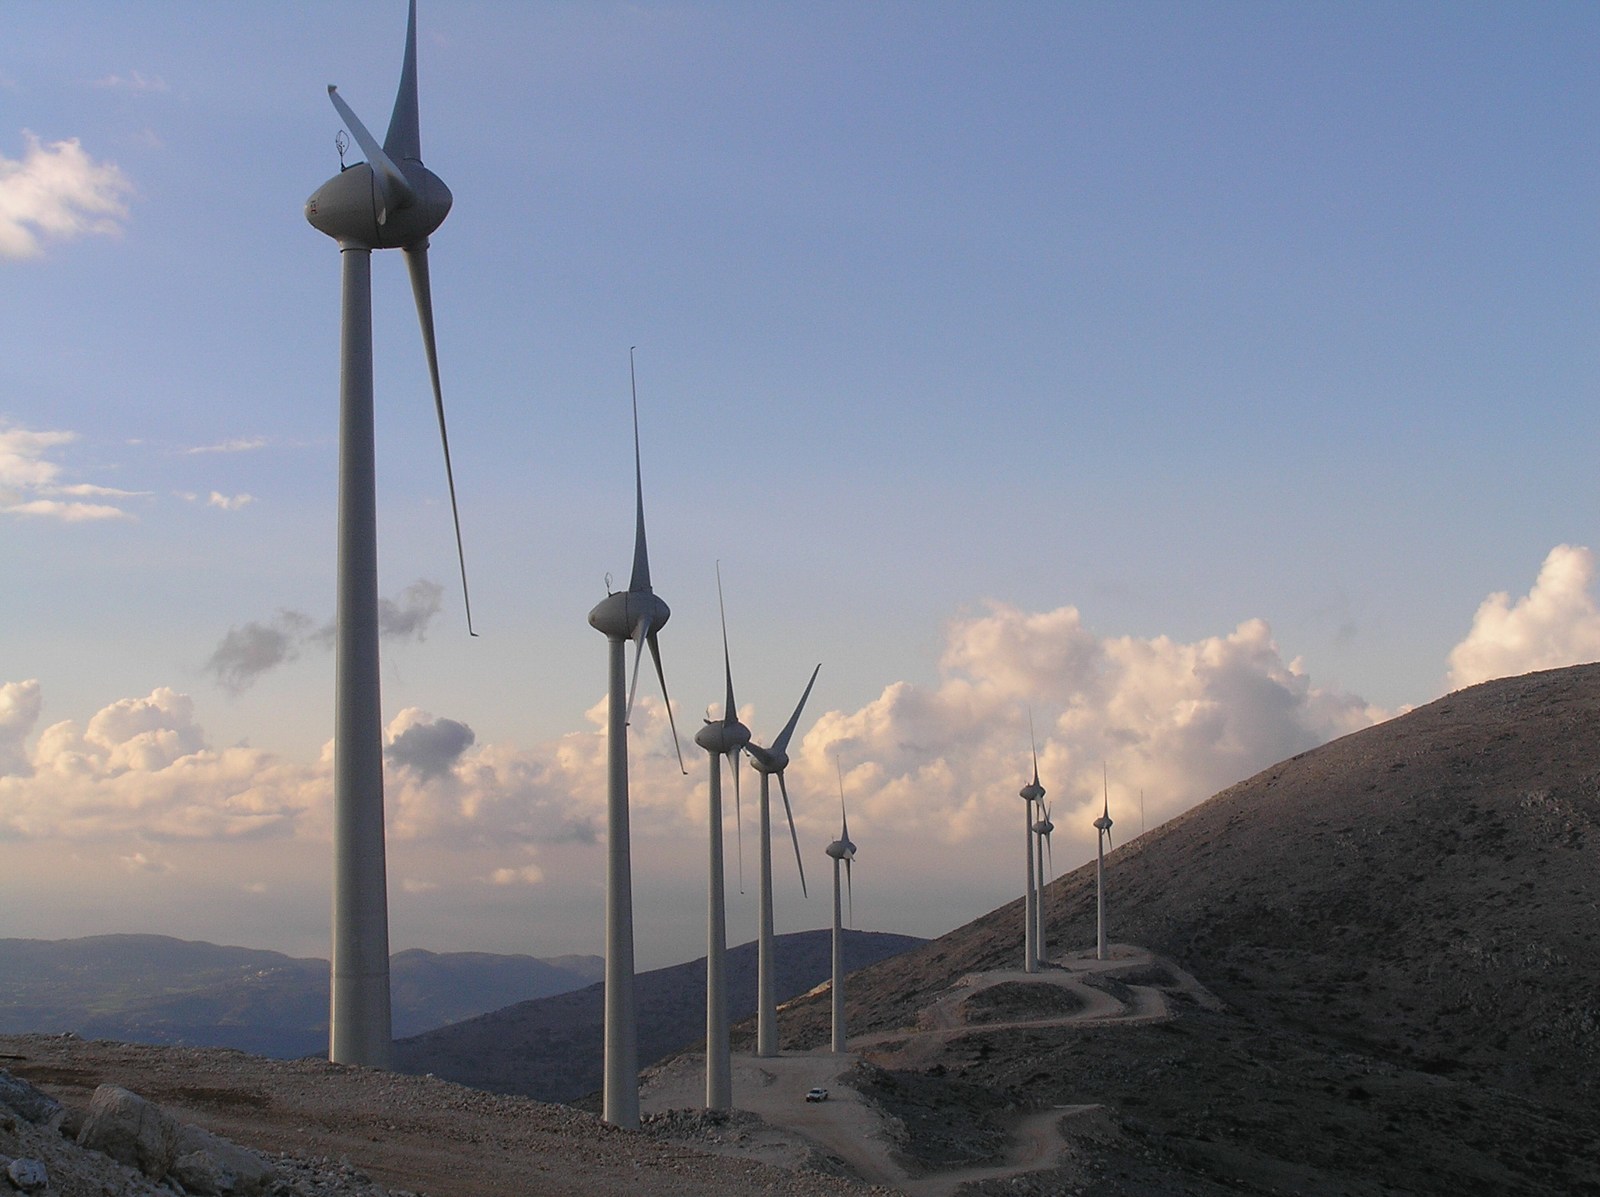 Νορβηγικό ενδιαφέρον για επενδύσεις στις Ανανεώσιμες Πηγές Ενέργειας στην Ελλάδα